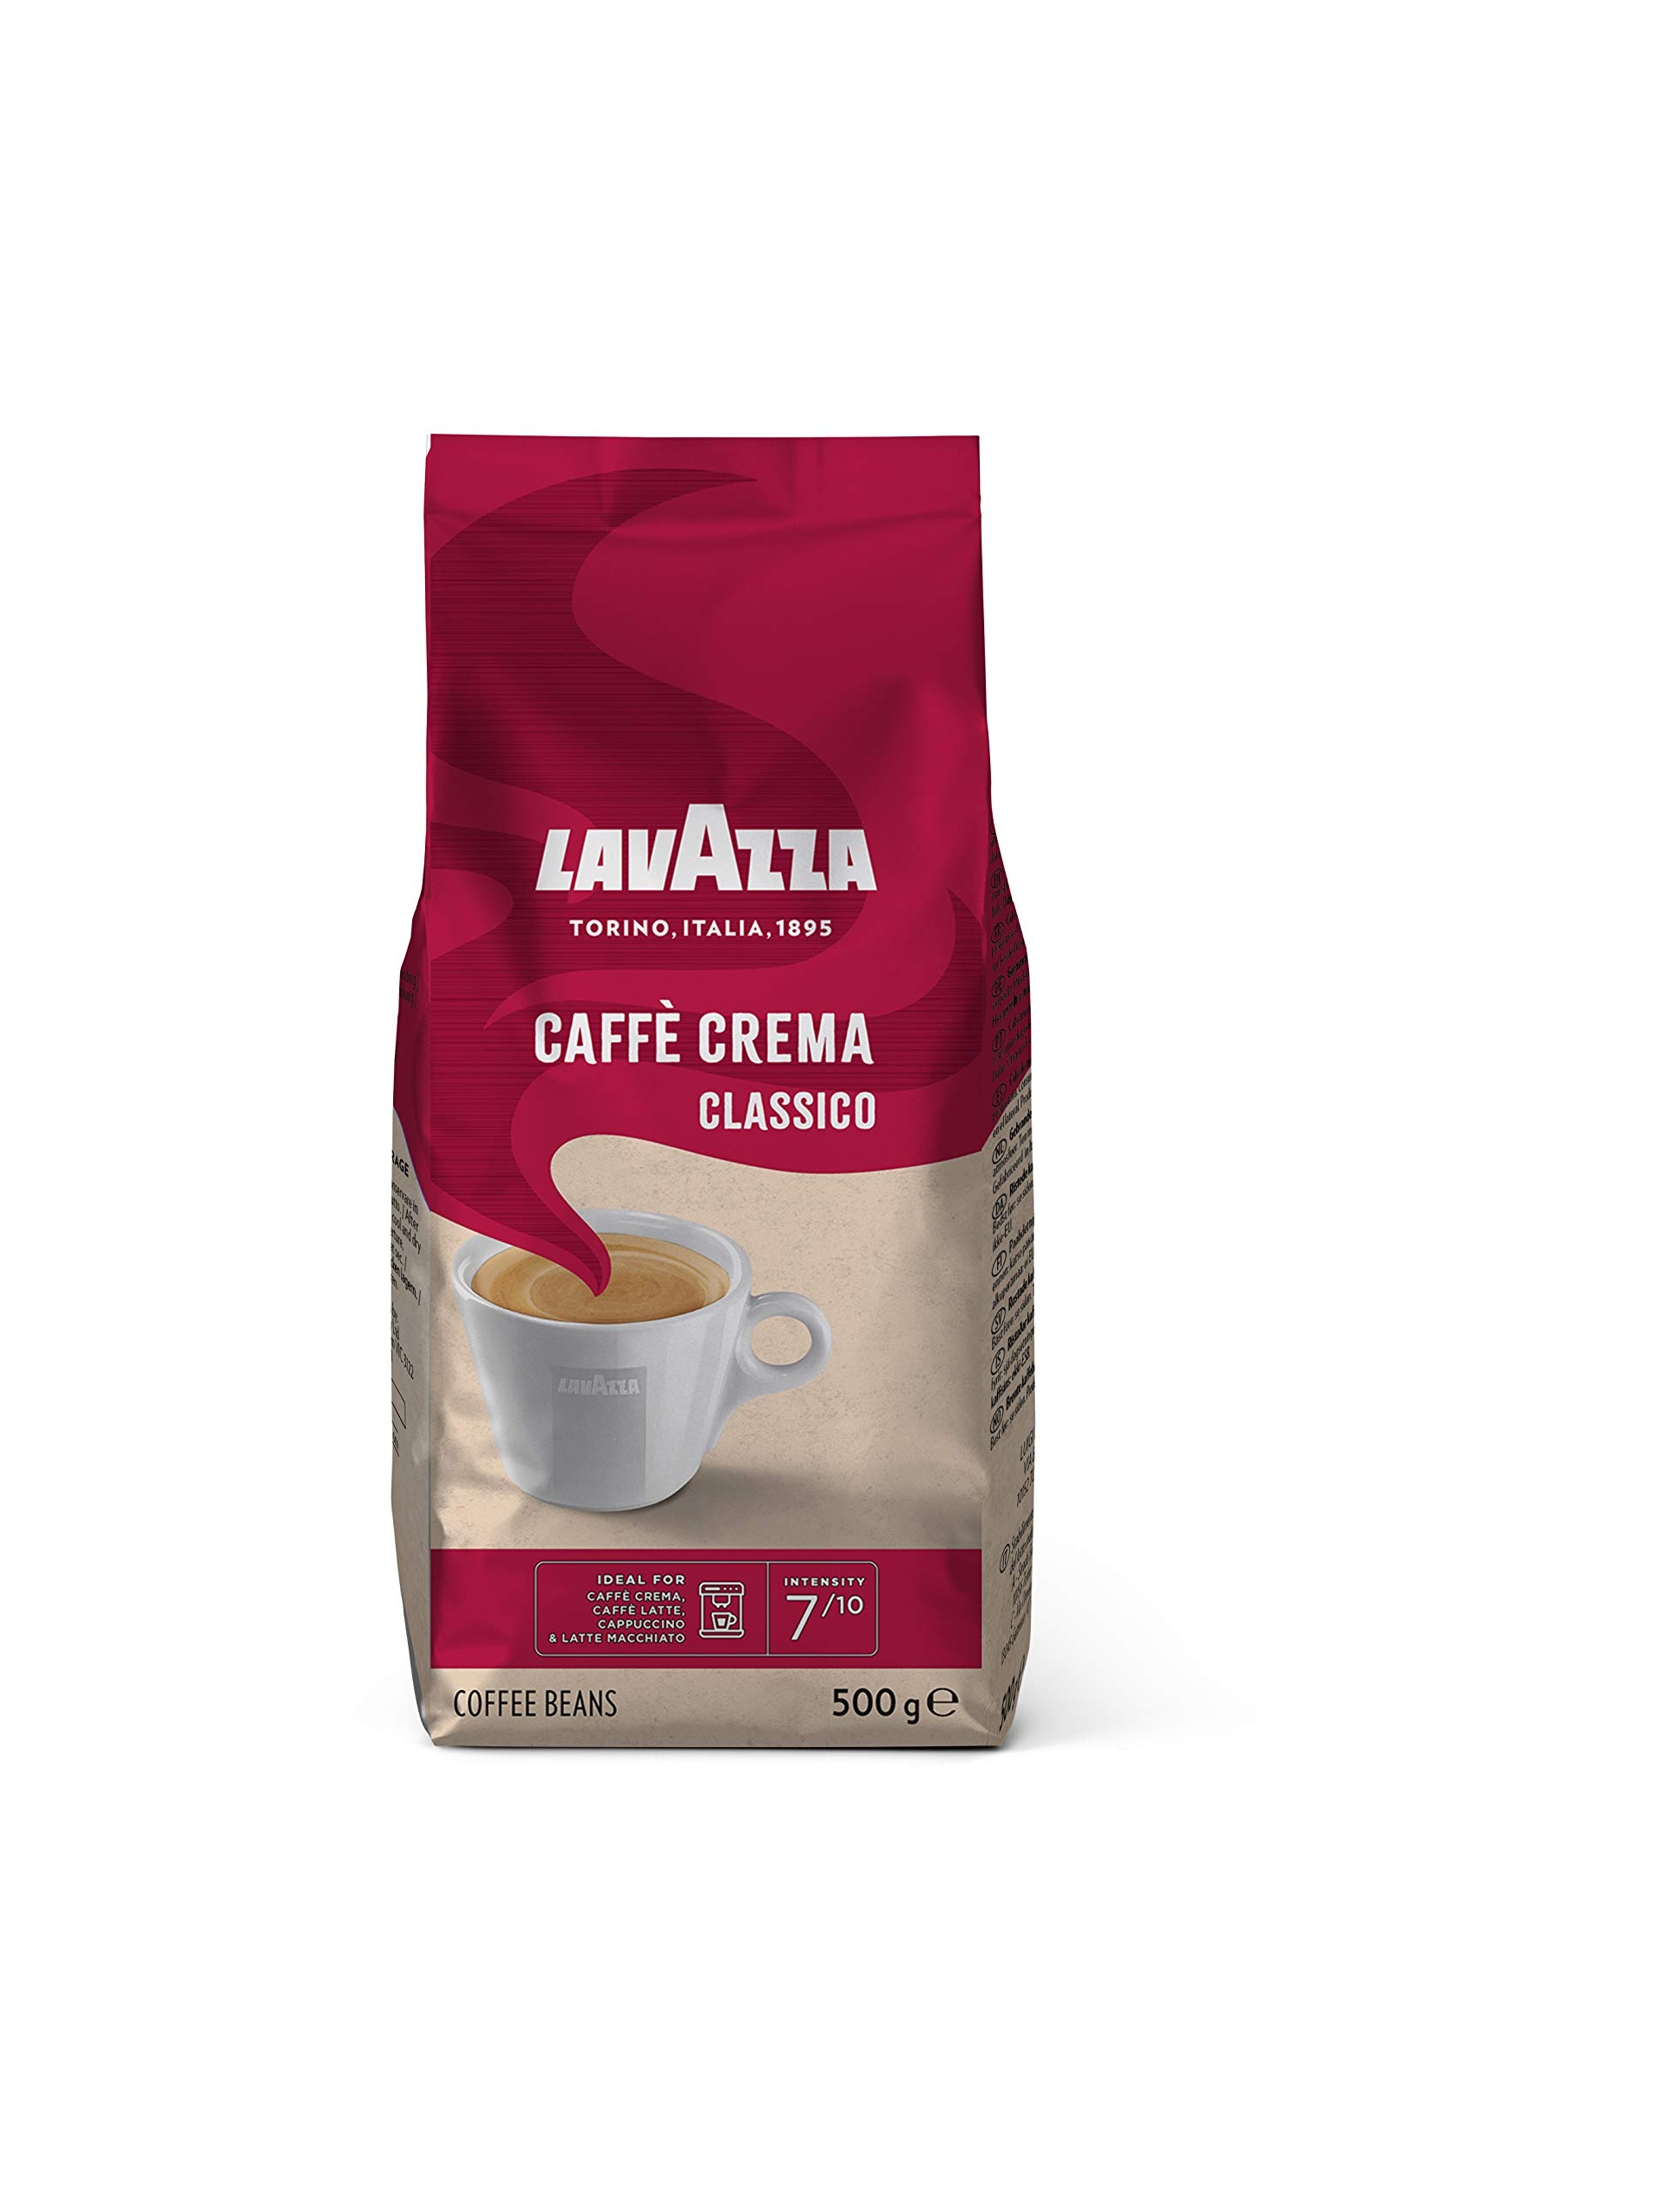 Bild Caffé Crema Classico 500 g